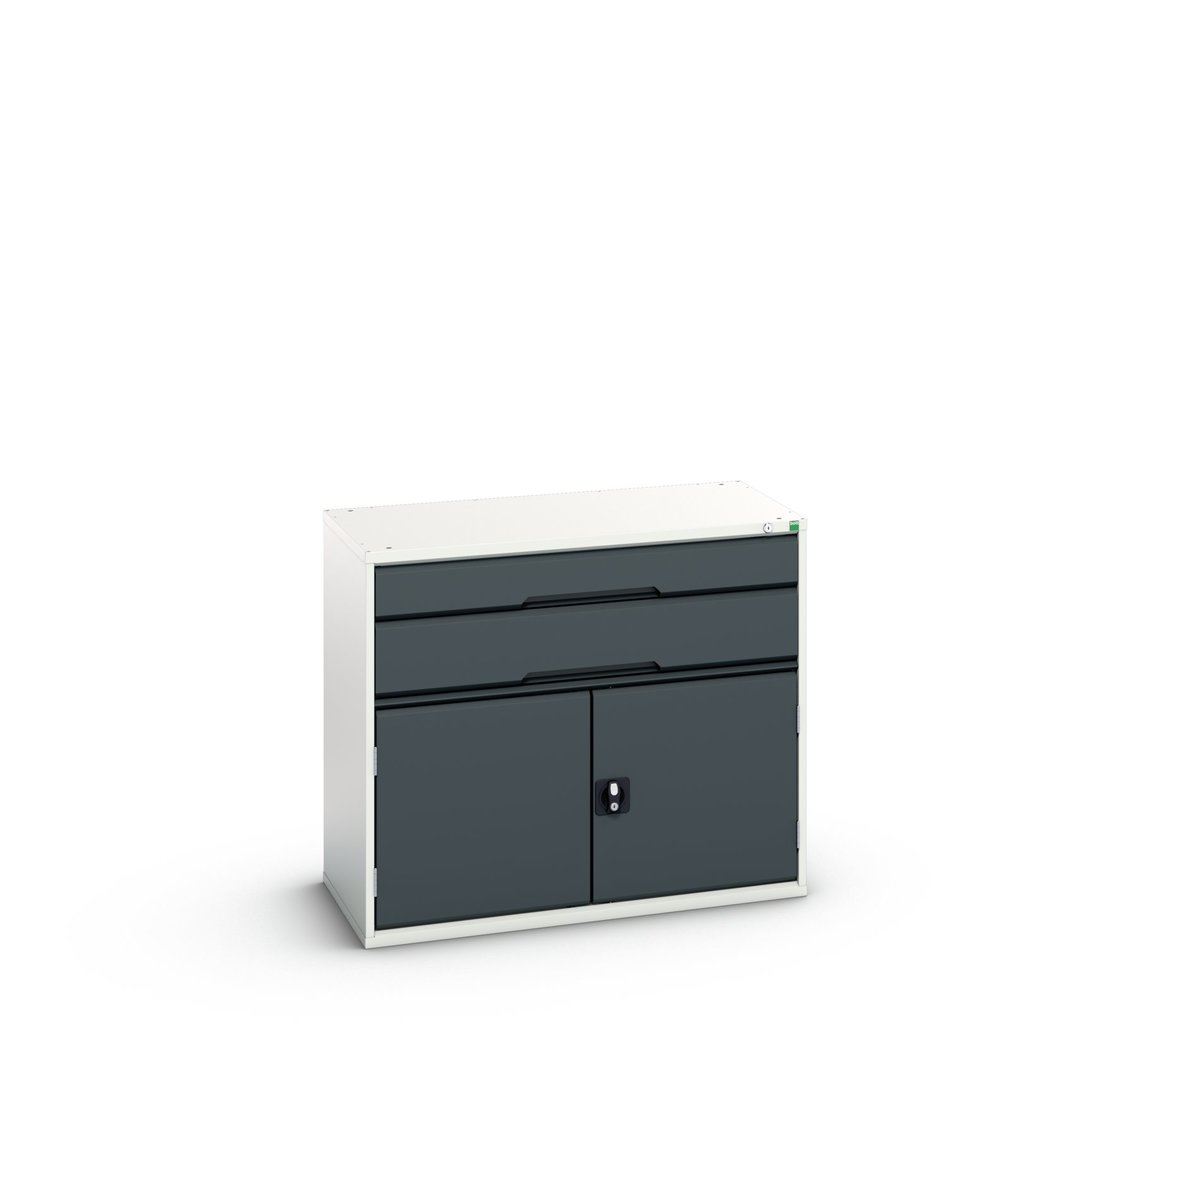 16925237. - verso drawer-door cabinet